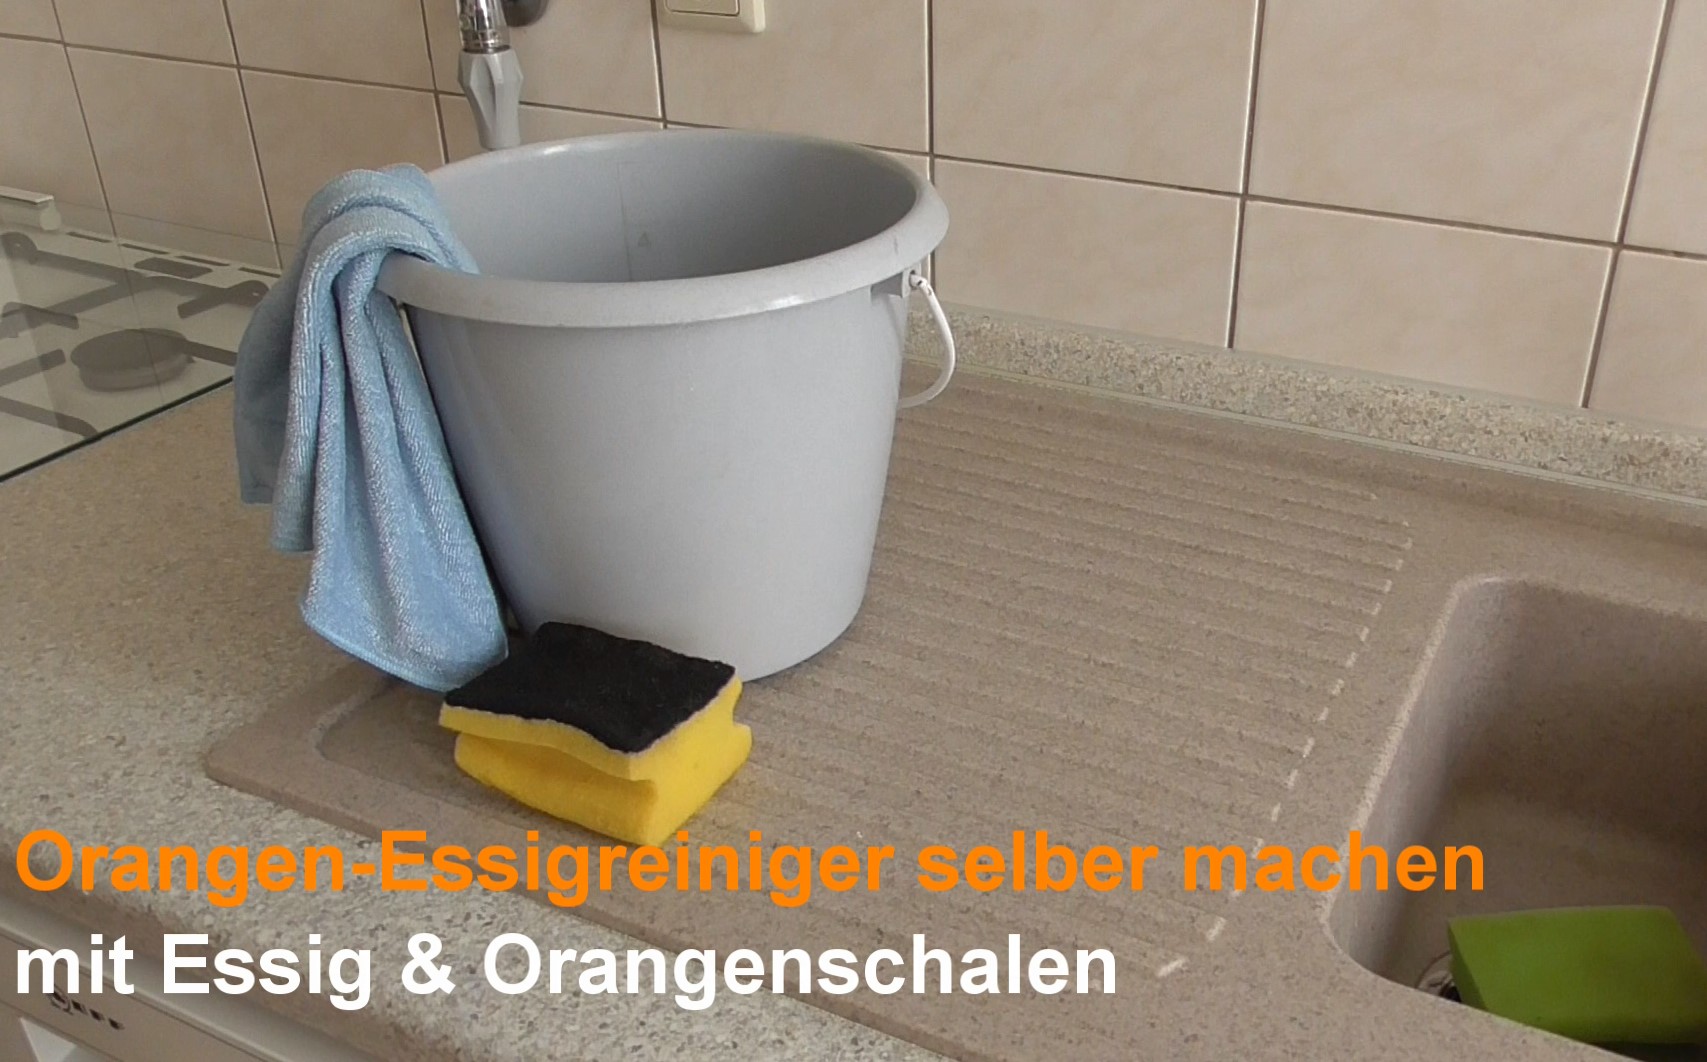 Orangen-Essigreiniger selber machen -  mit den Hausmitteln Orangenschalen & Essig zum natürlichen Putzmittel